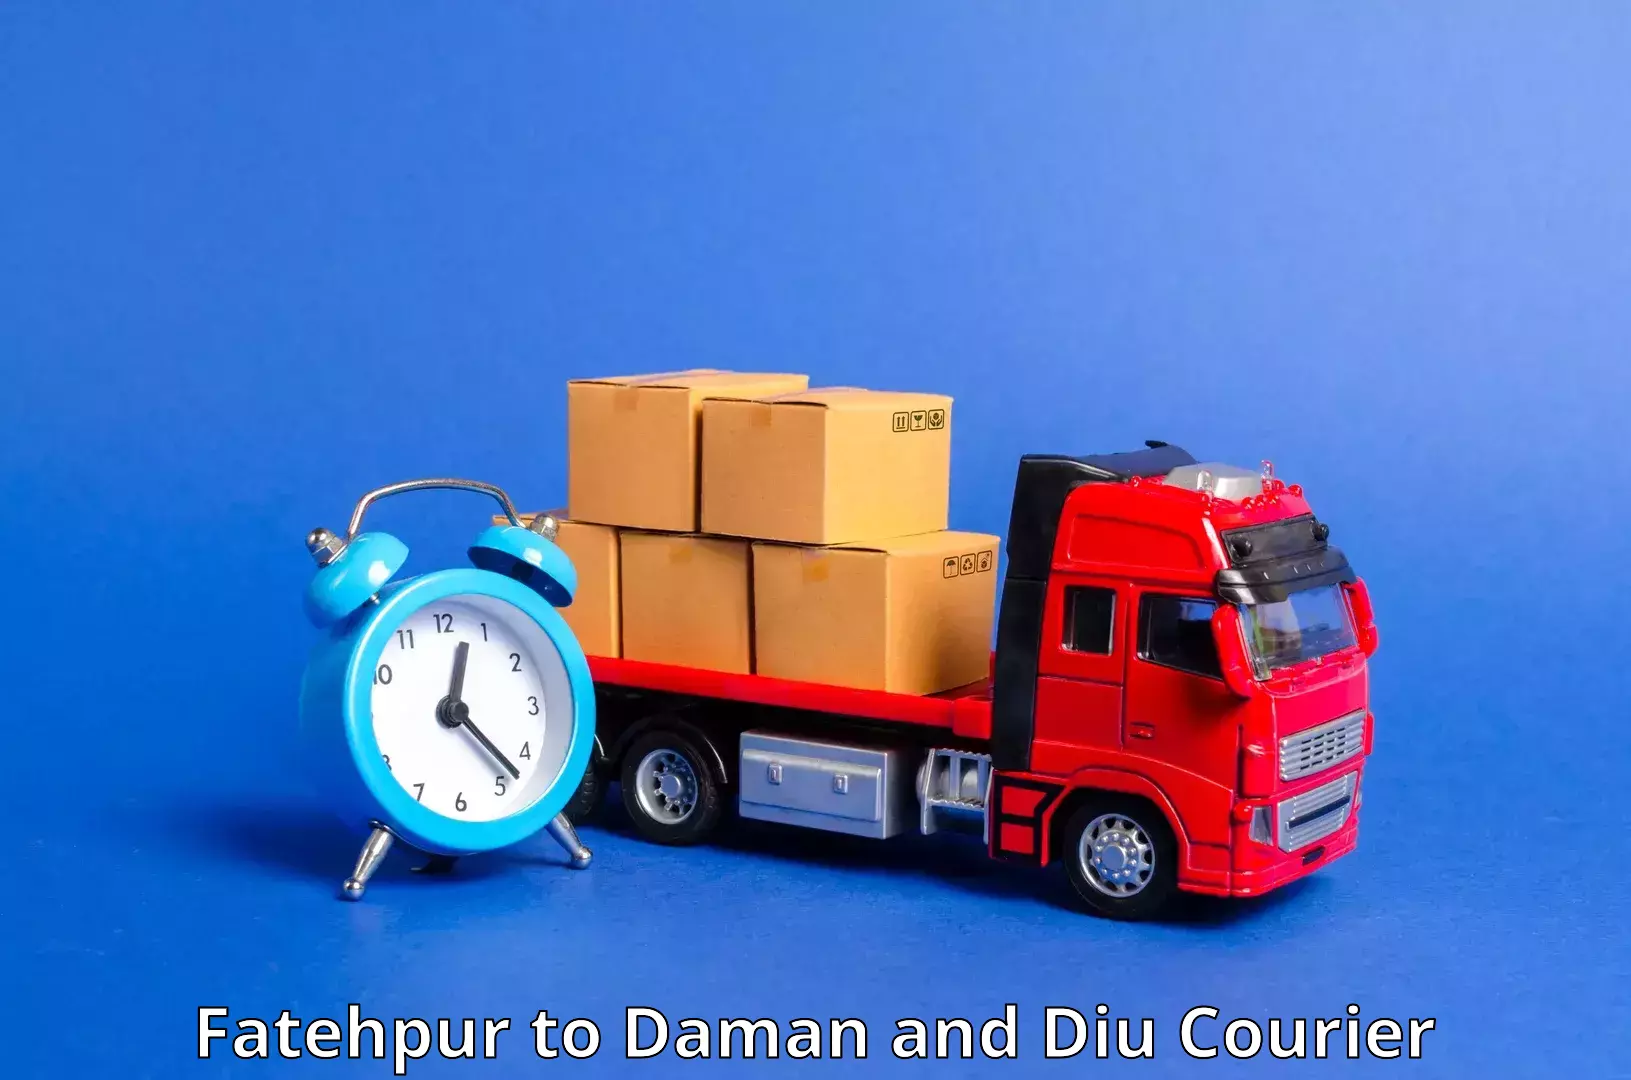 Express logistics service Fatehpur to Daman and Diu